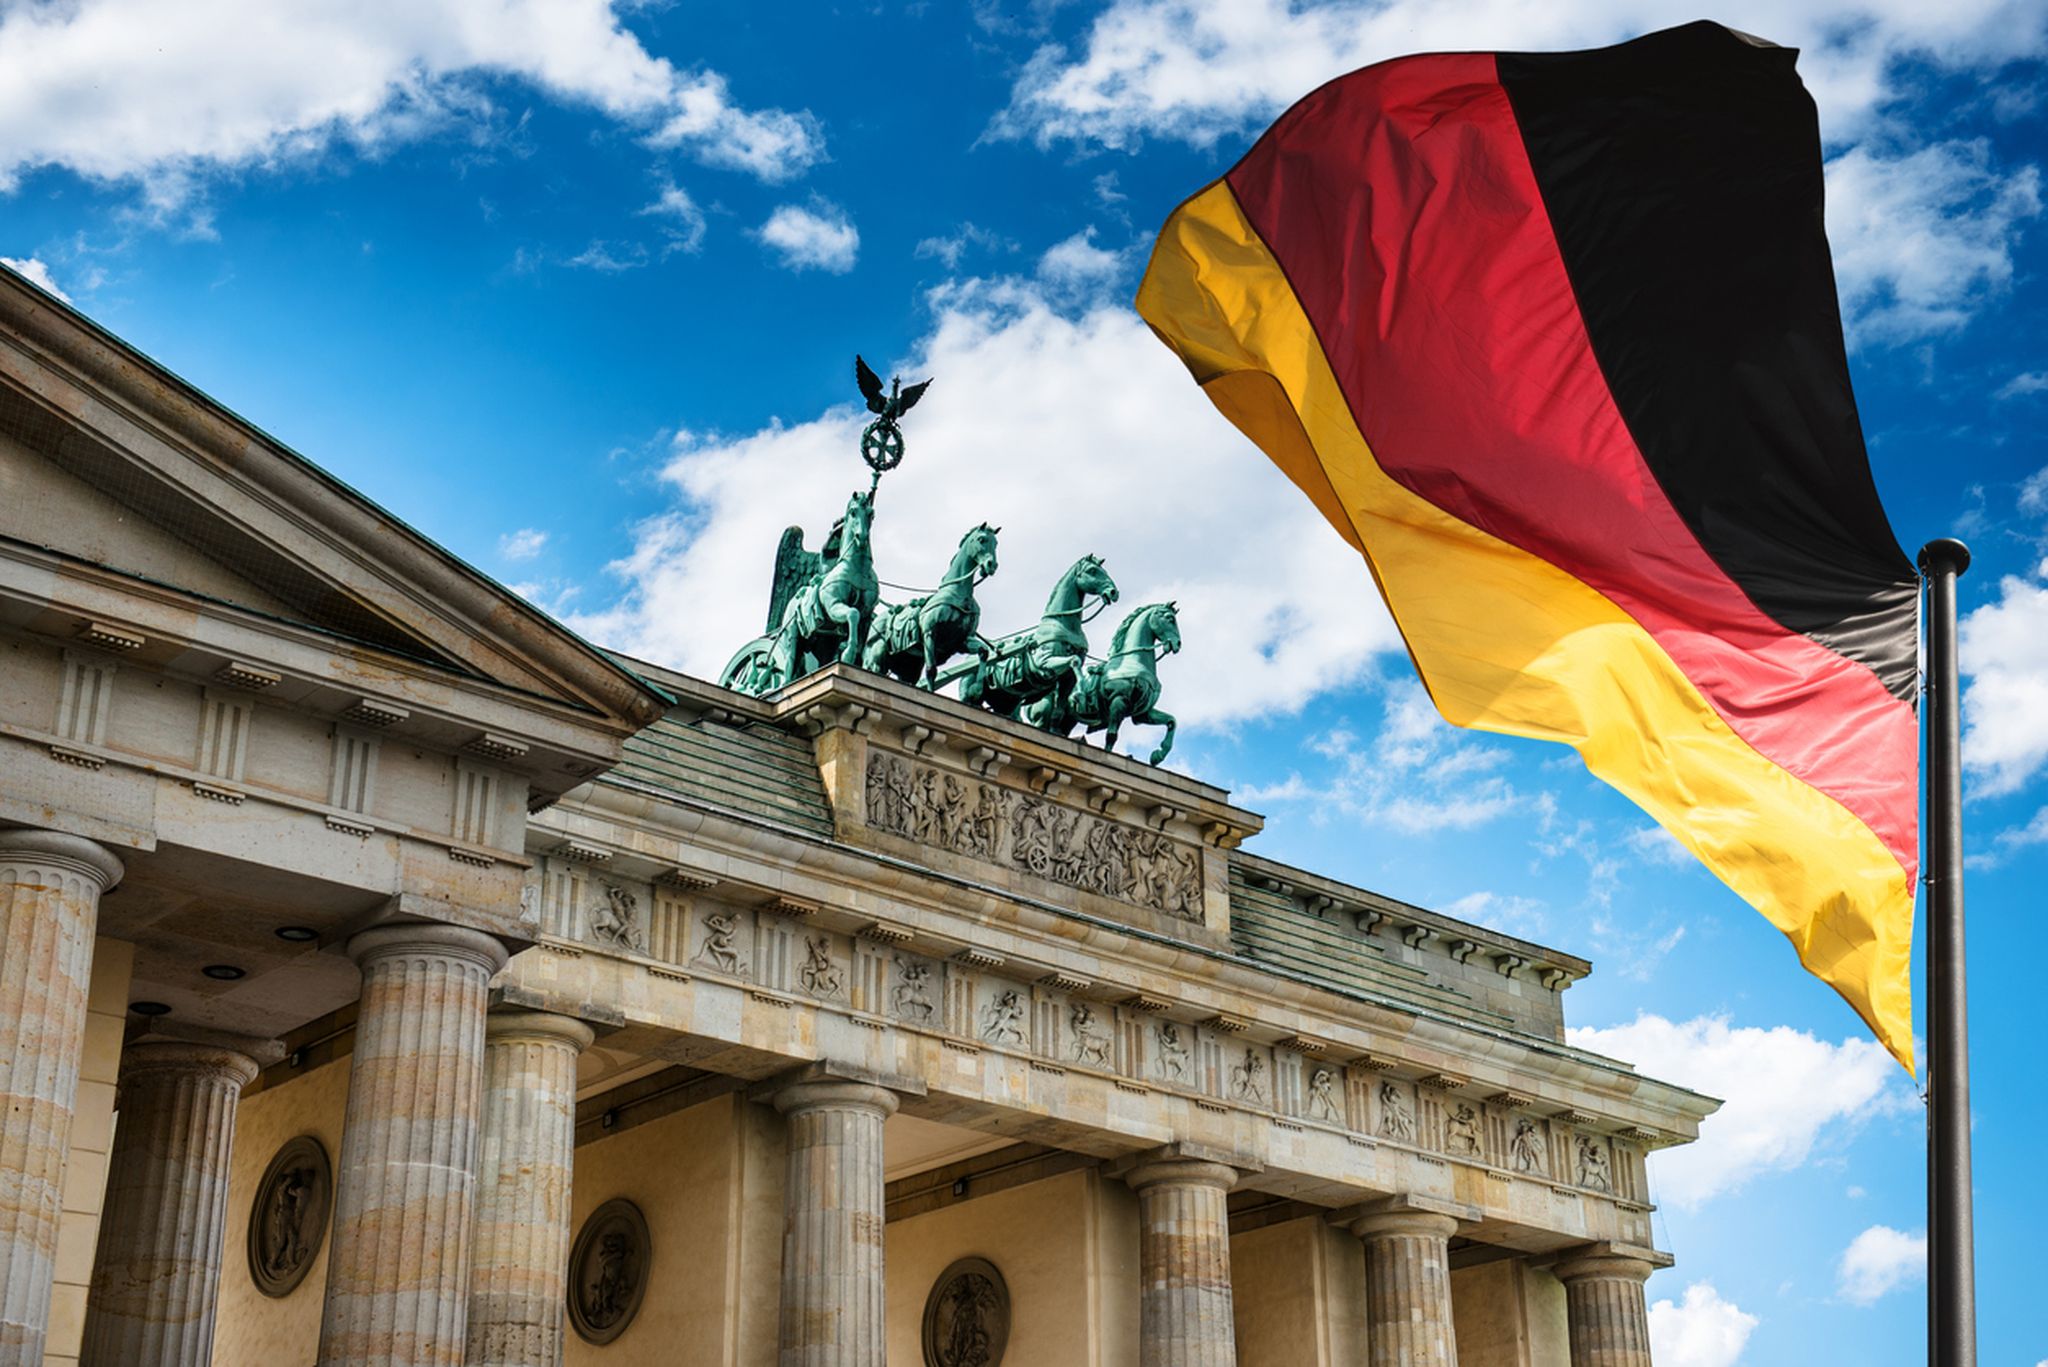 Duitse beurs richt vizier voorzichtig weer omhoog